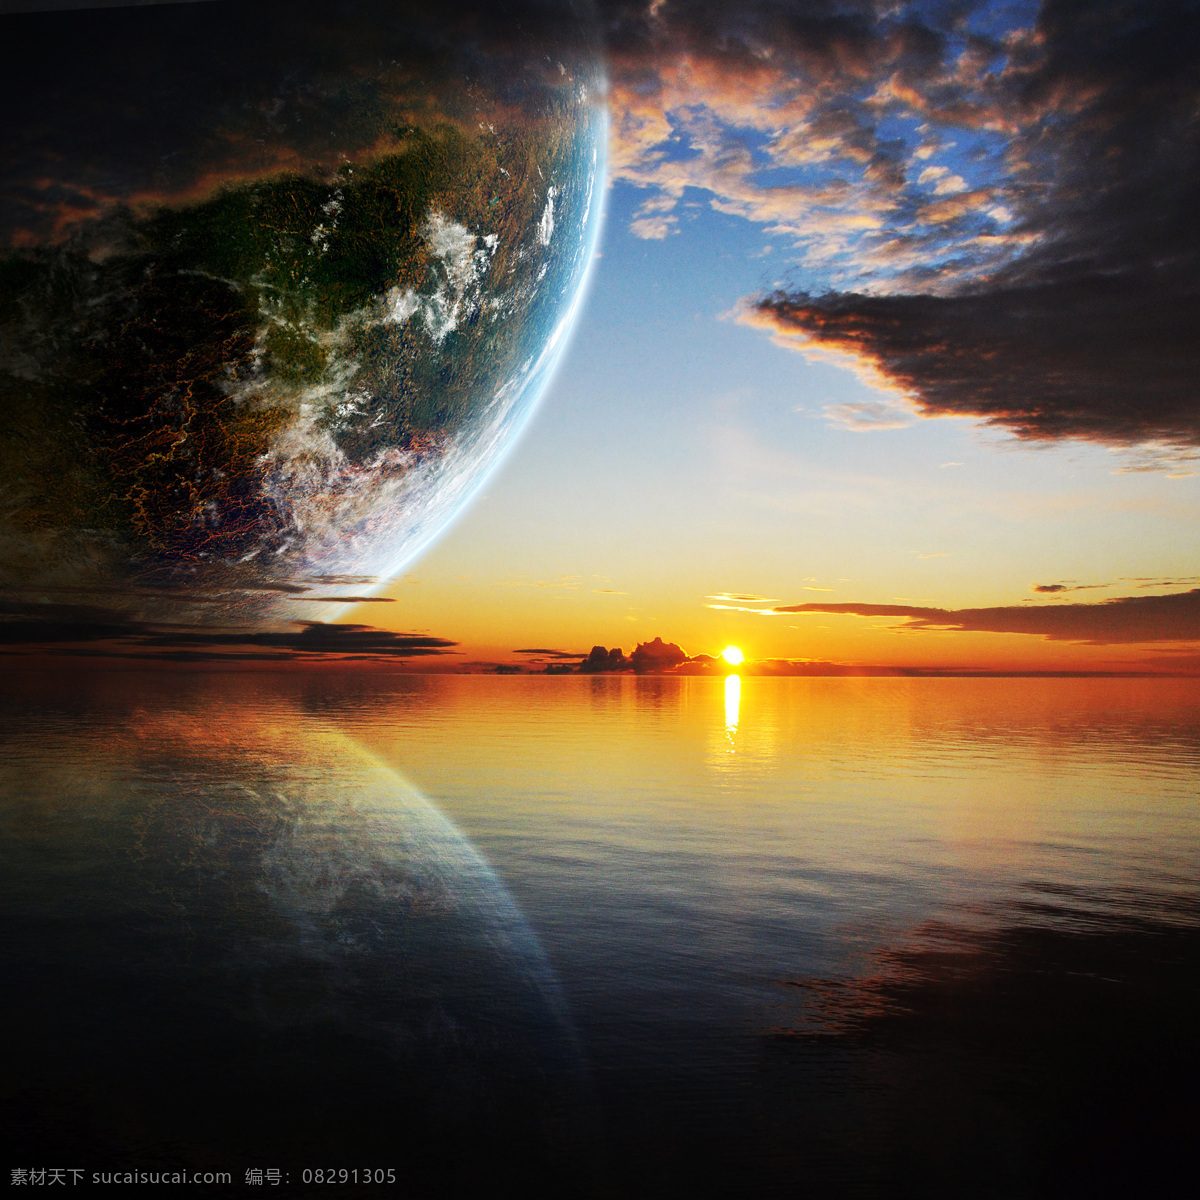 星球 地球 宇宙 云彩 奇幻 魔幻 星空 星际 湖 太阳 科学研究 现代科技